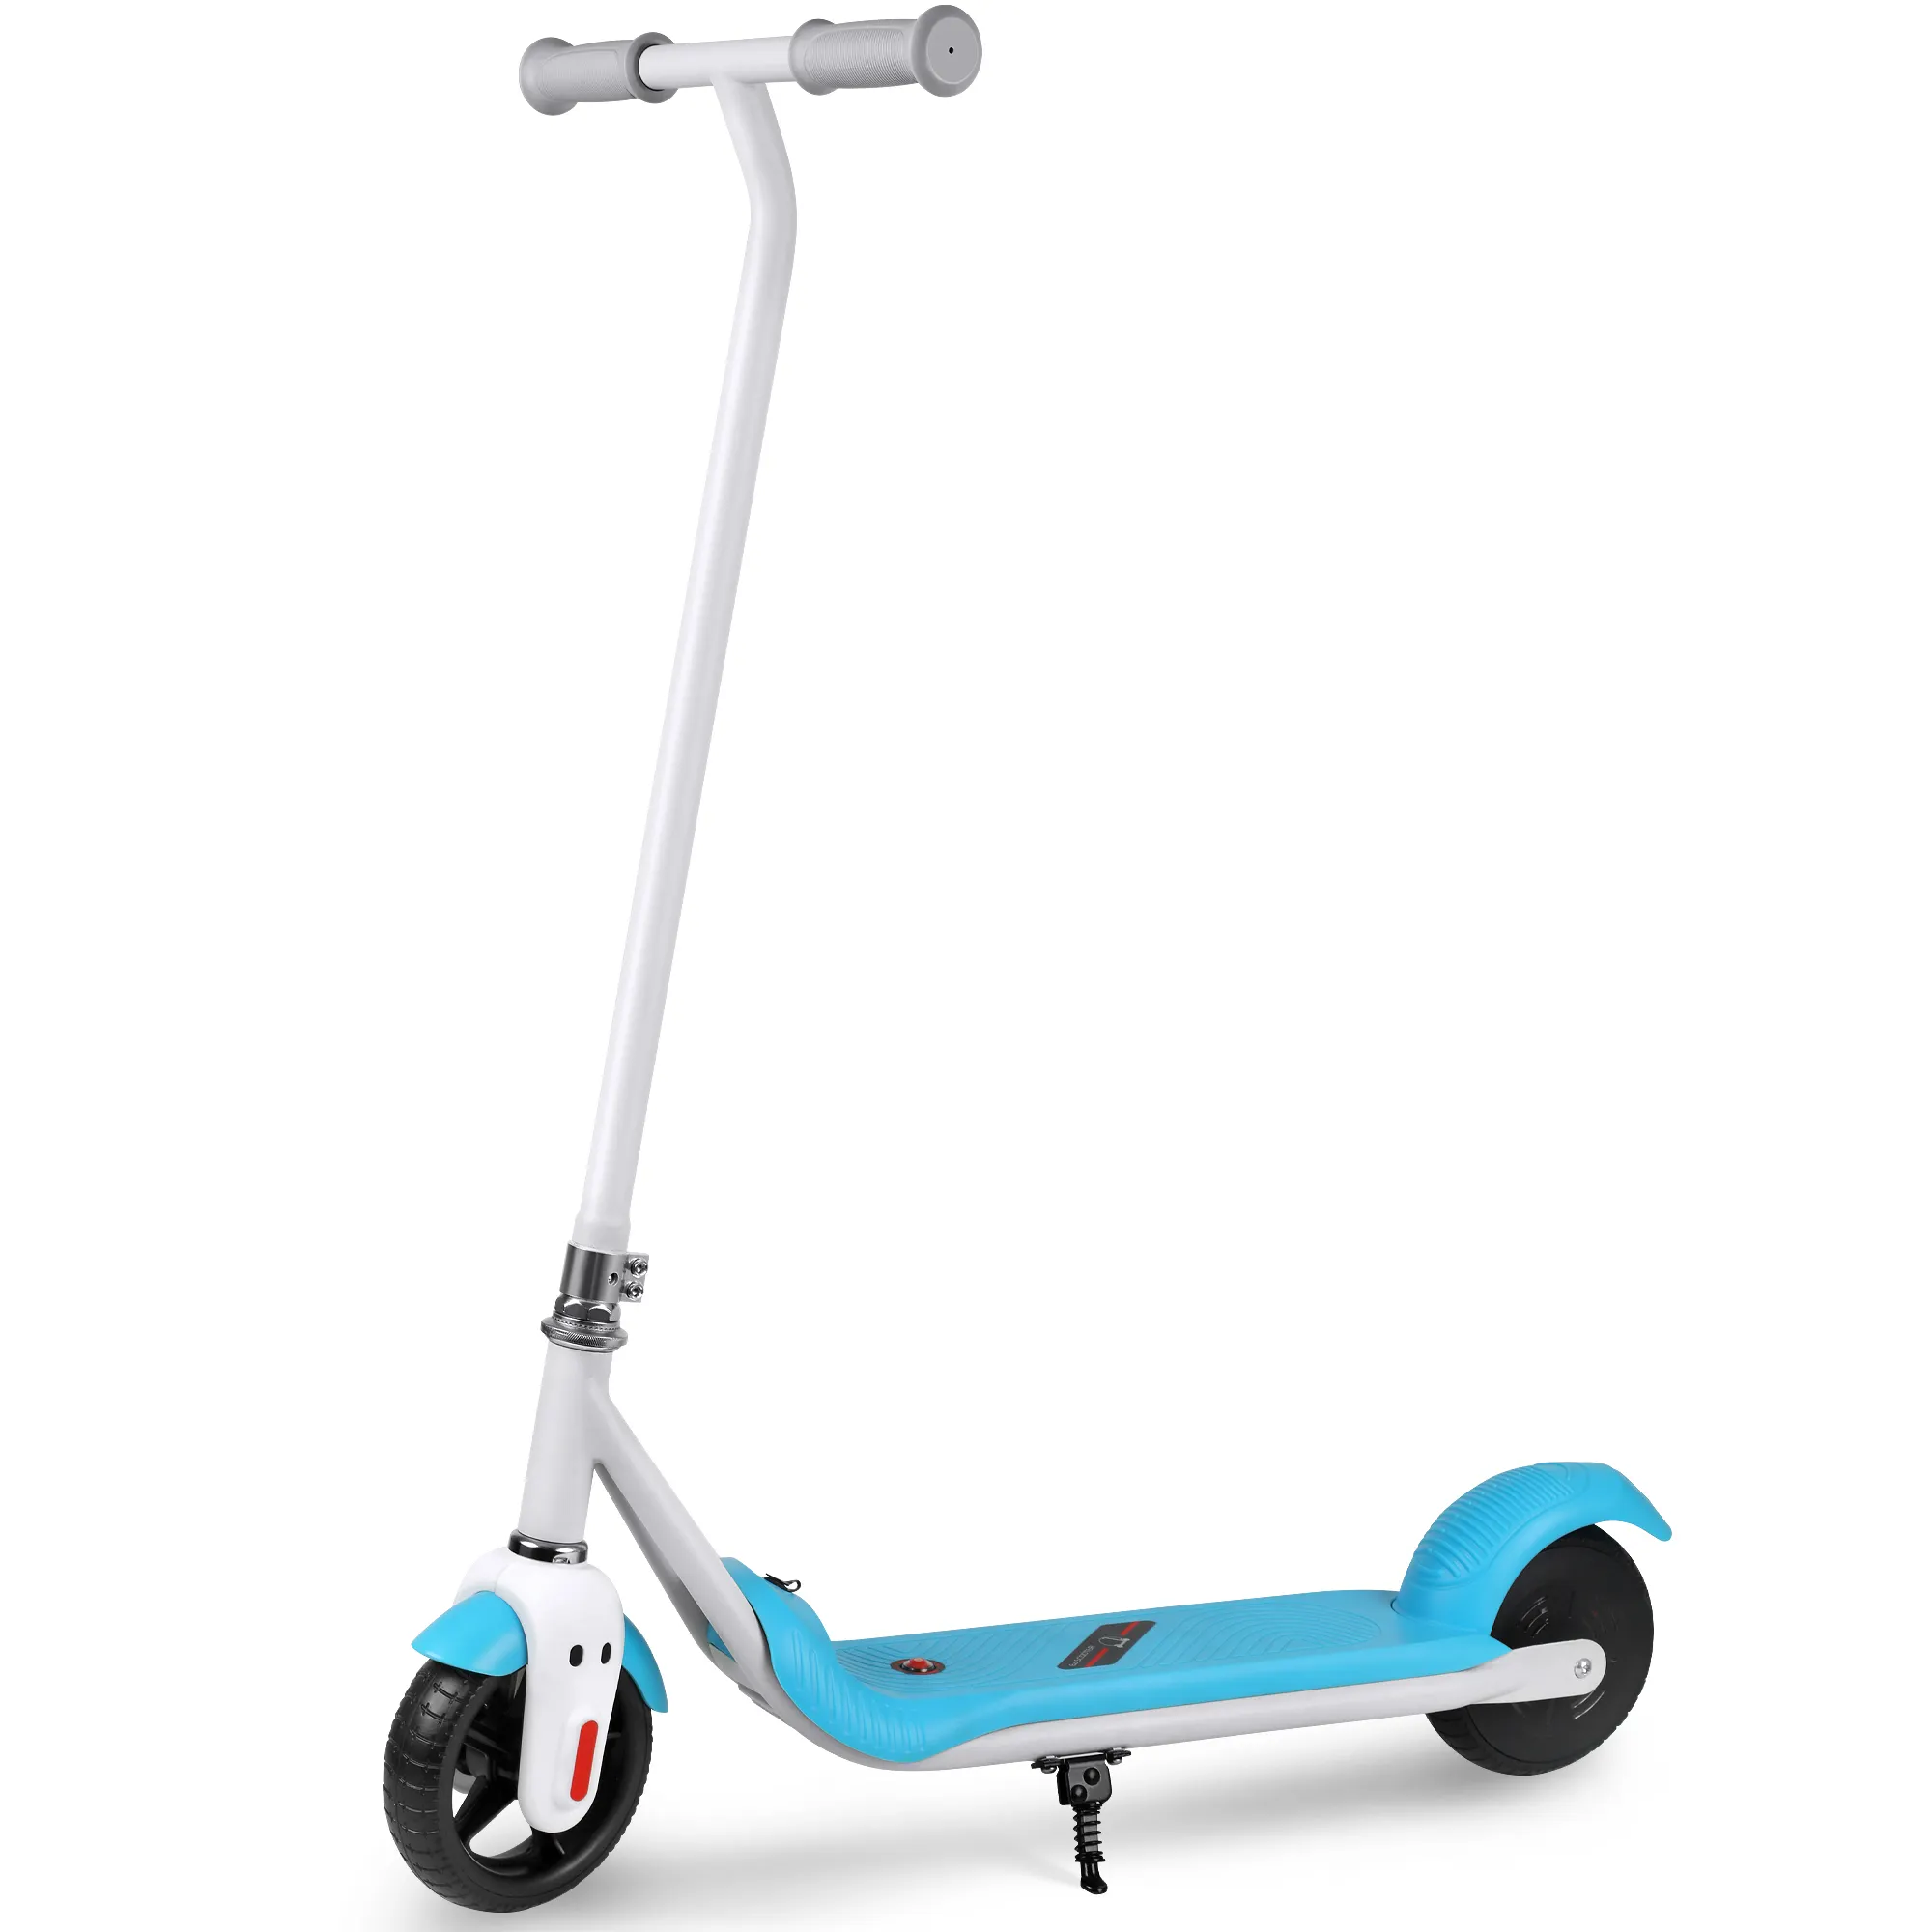 150w 6.5 pollici di alta qualità professionale personalizzato, acquistare regolabile a buon mercato per bambini Scooter 2 ruote Kick Foot Scooter